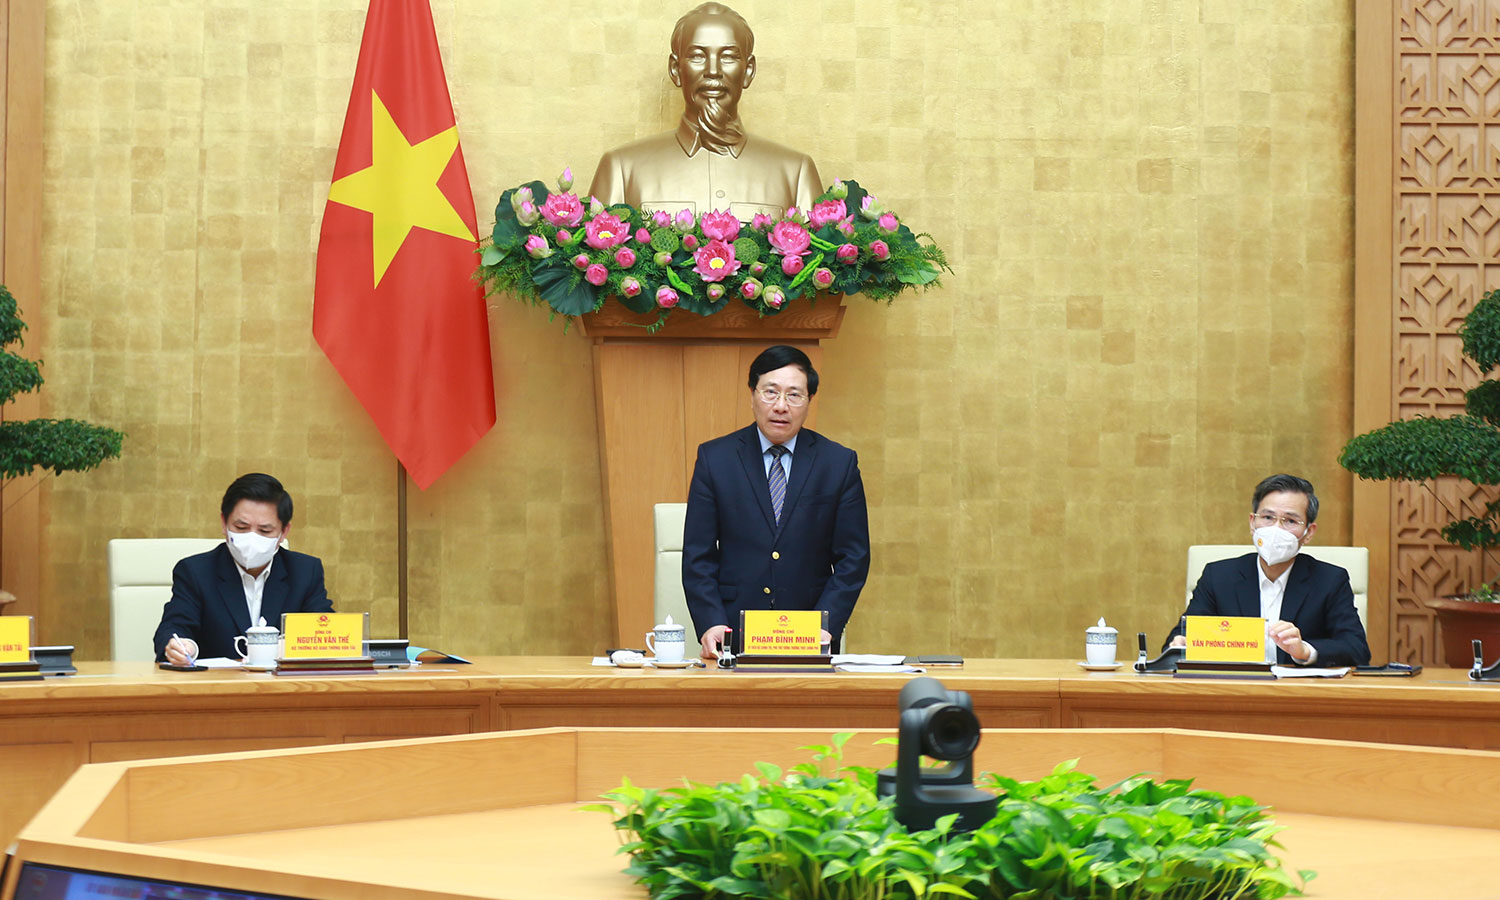 Phó Thủ tướng Phạm Bình Minh chủ trì Hội nghị trực tuyến toàn quốc tổng kết công tác bảo đảm trật tự, ATGT năm 2021, bàn phương hướng, nhiệm vụ năm 2022. Ảnh: VGP/Hải Minh 